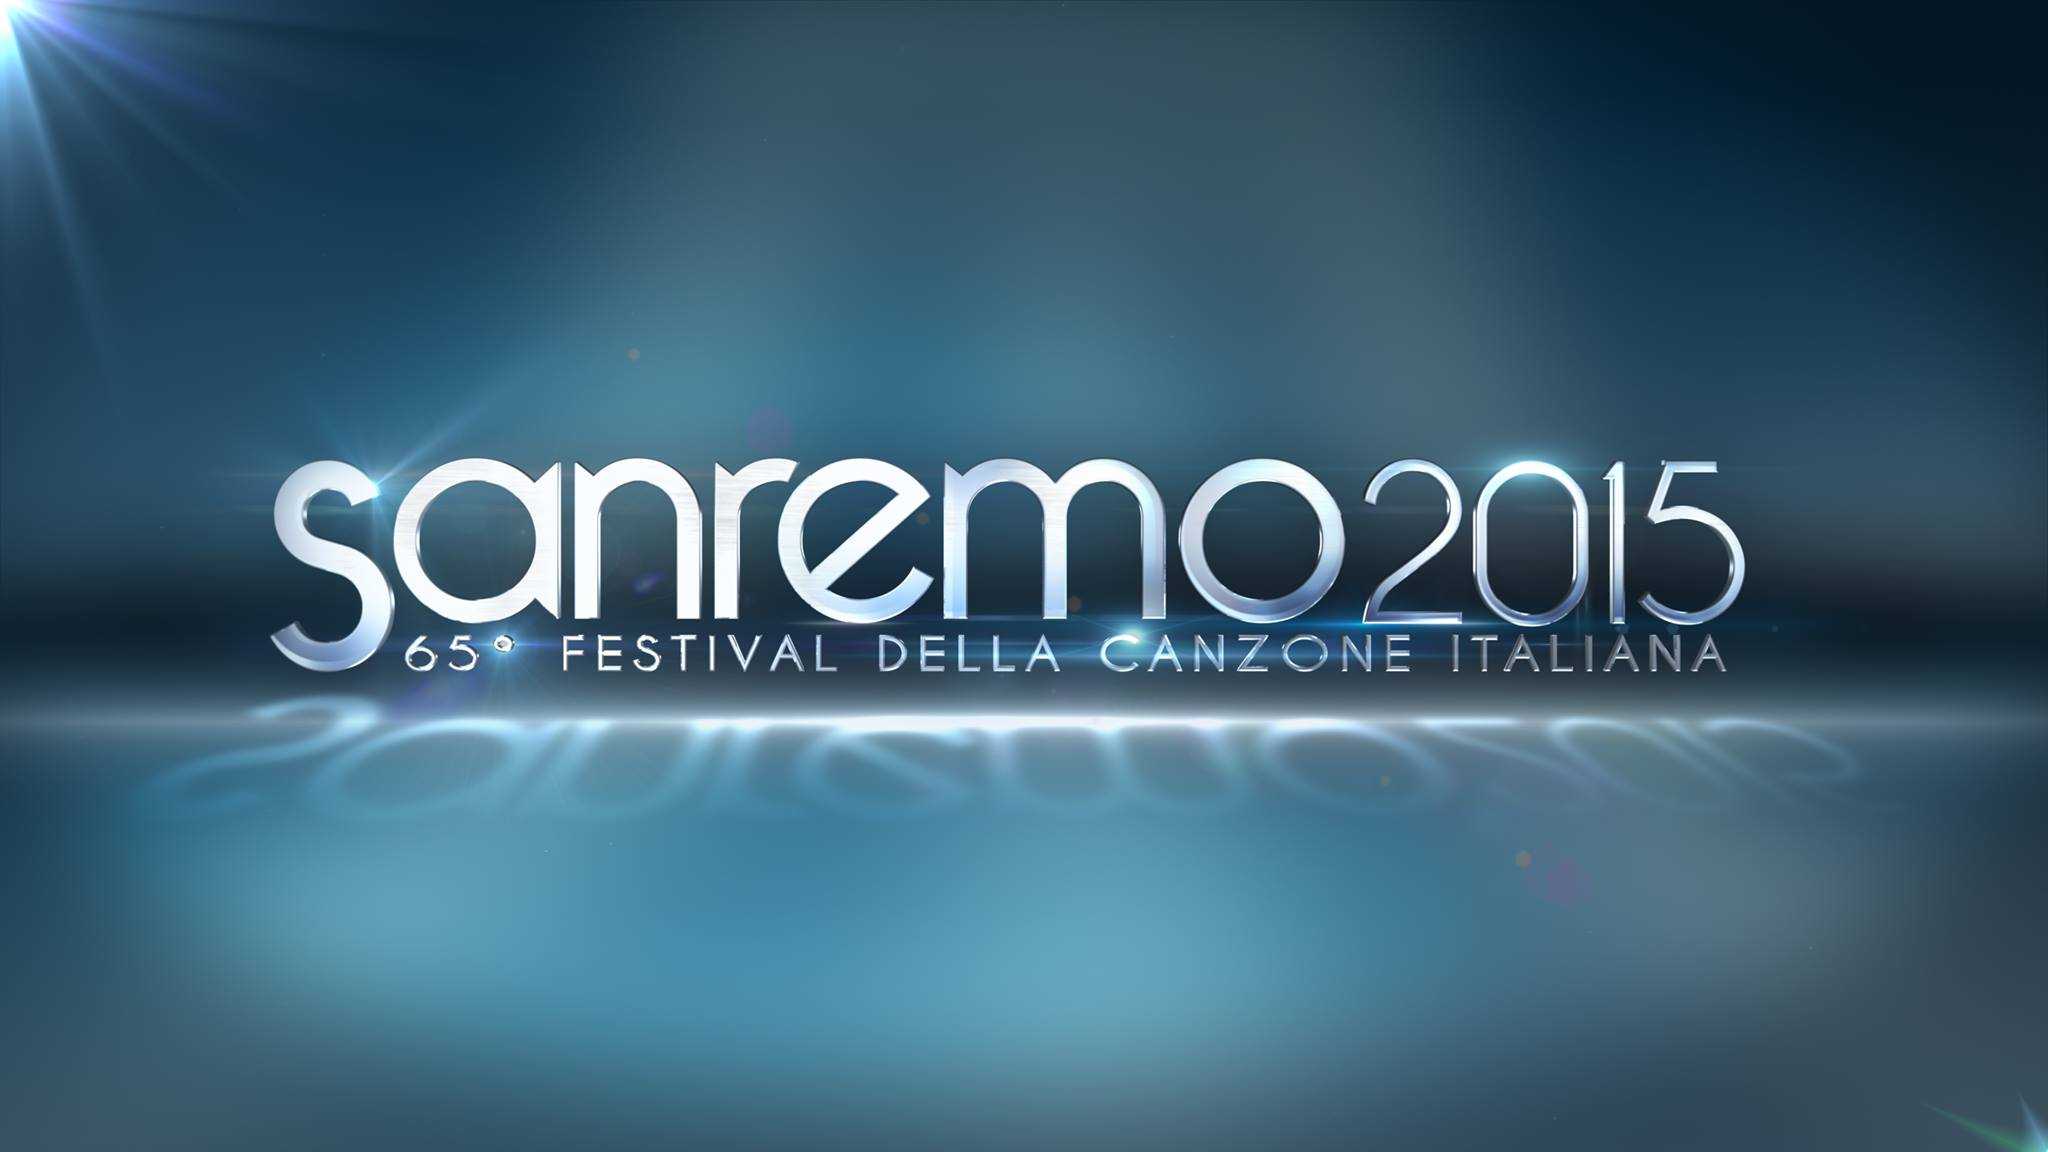 Sanremo 2015, Carlo Conti svela durante l'Arena i nomi dei 20 in big in gara